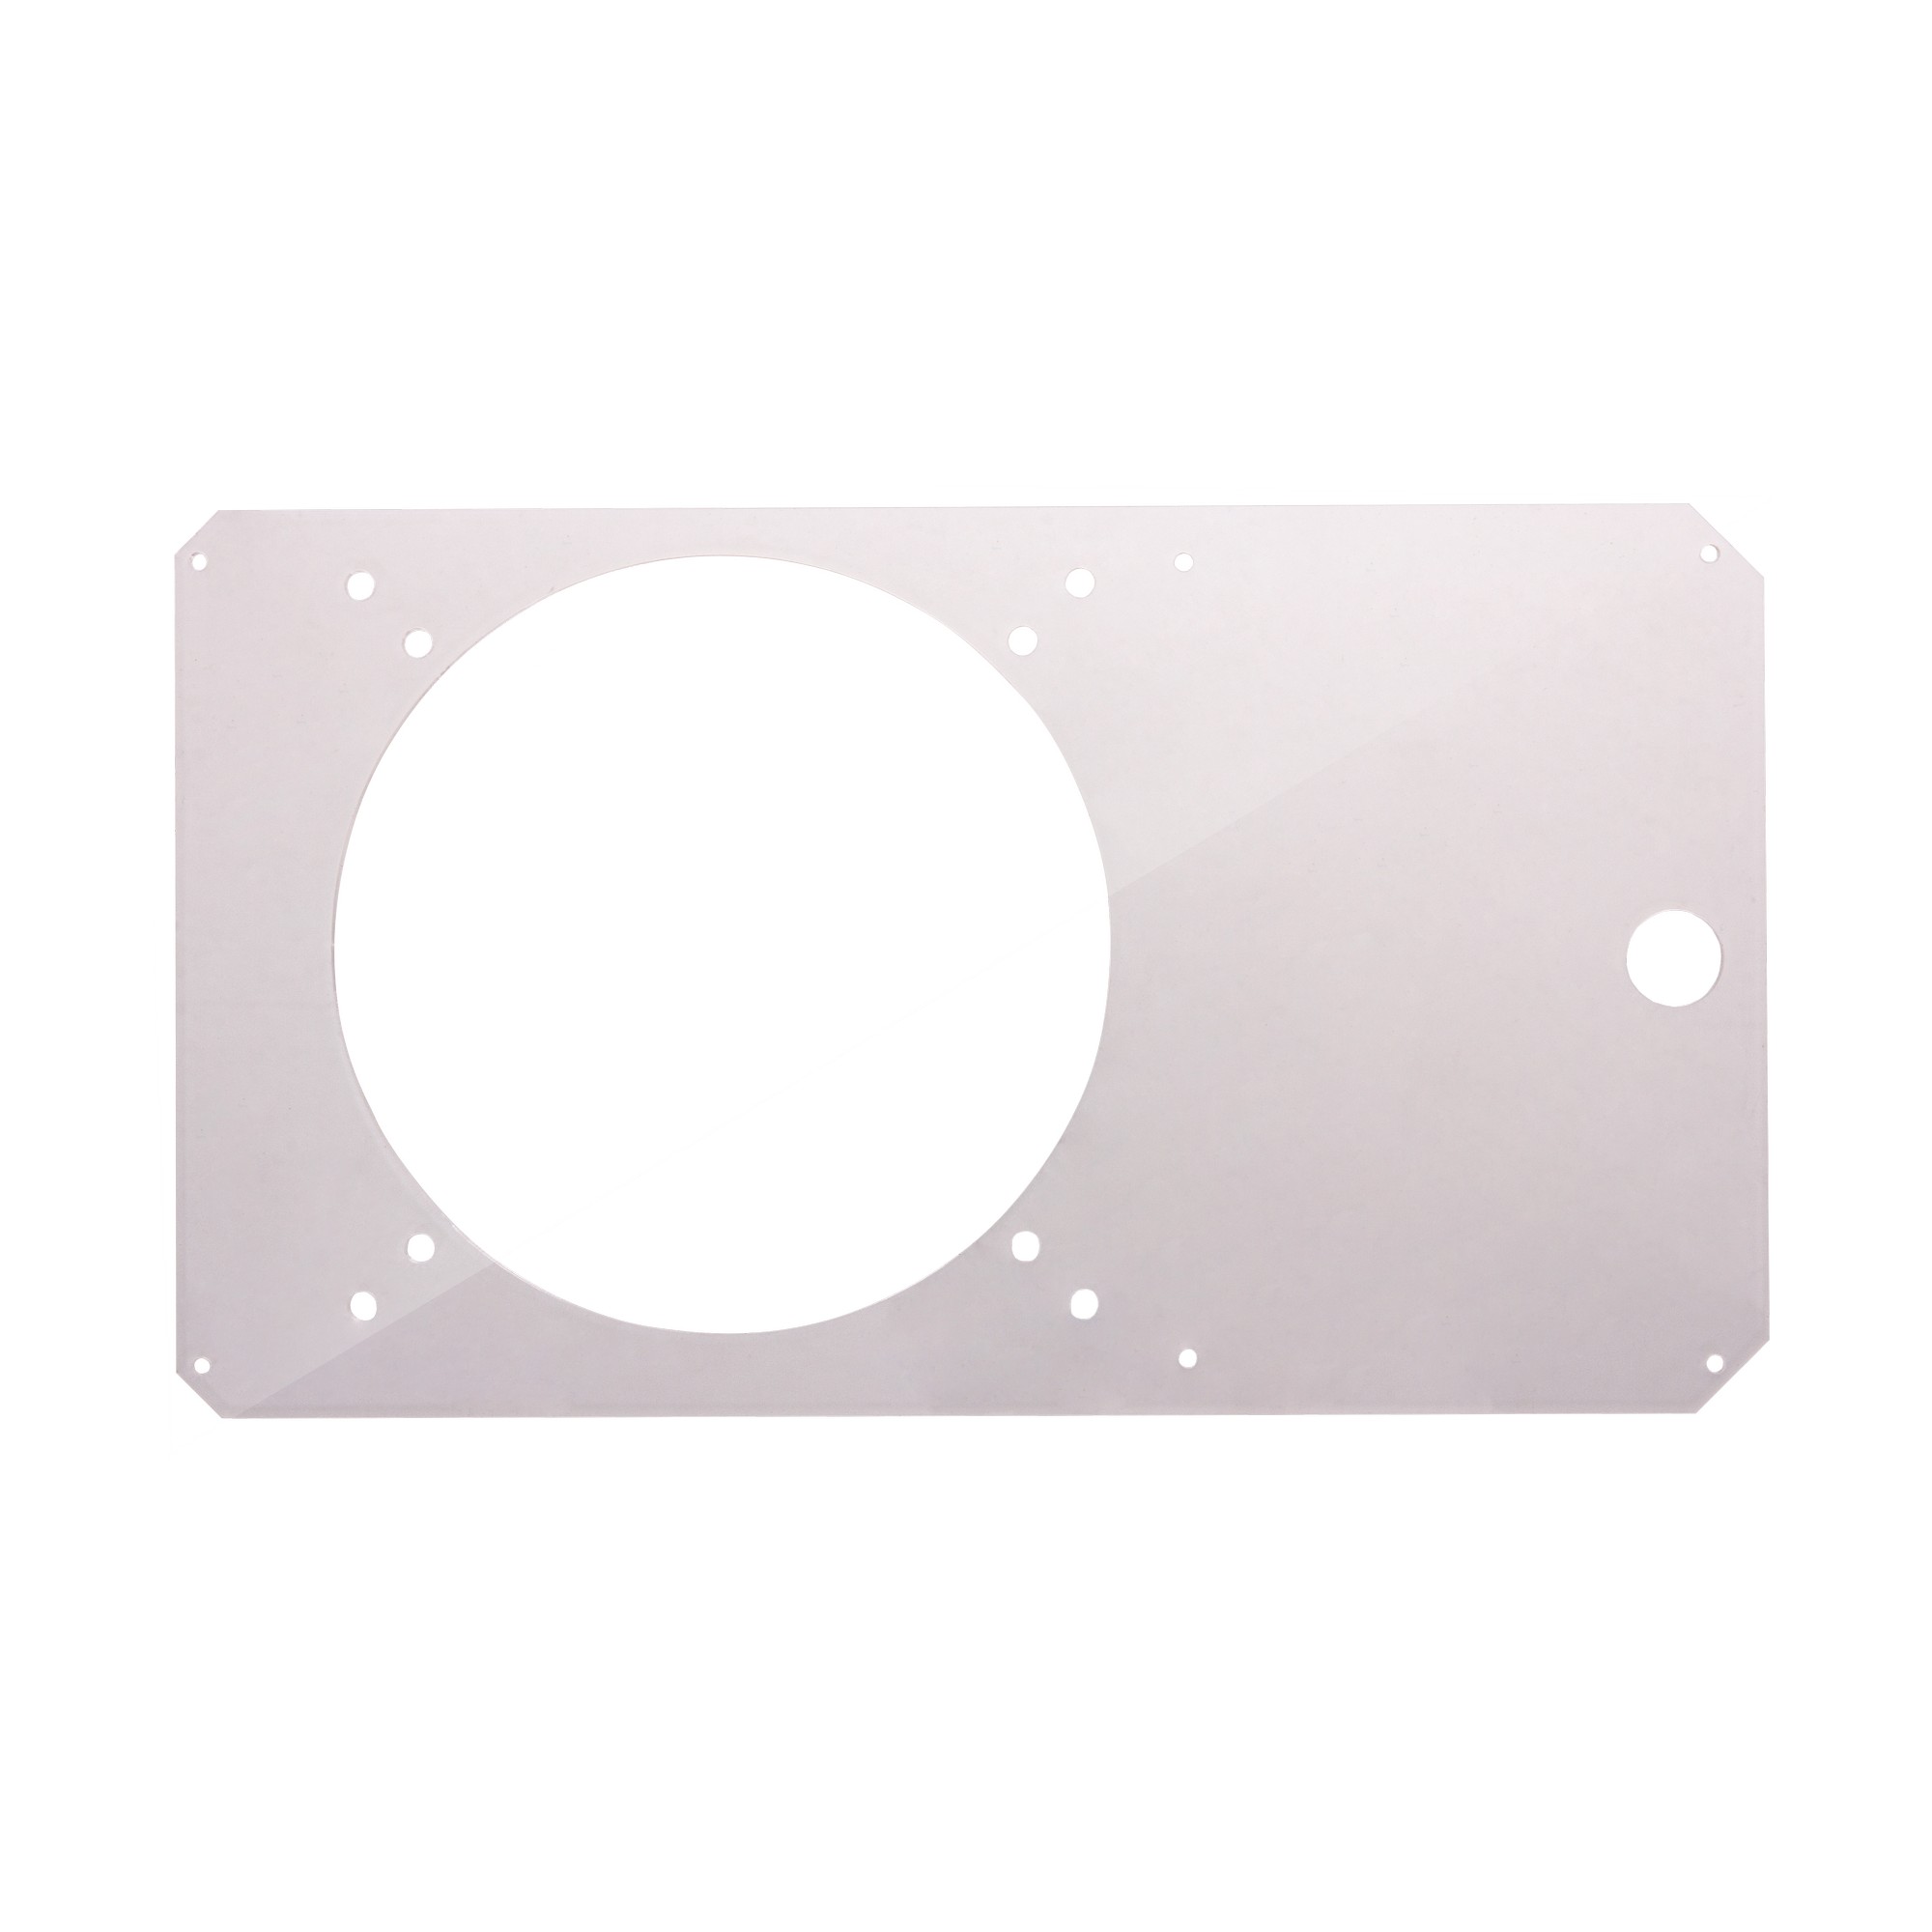 Lazer3D LZ7 XTD Right Panel (16mm Vandal) -  Clear Window Open